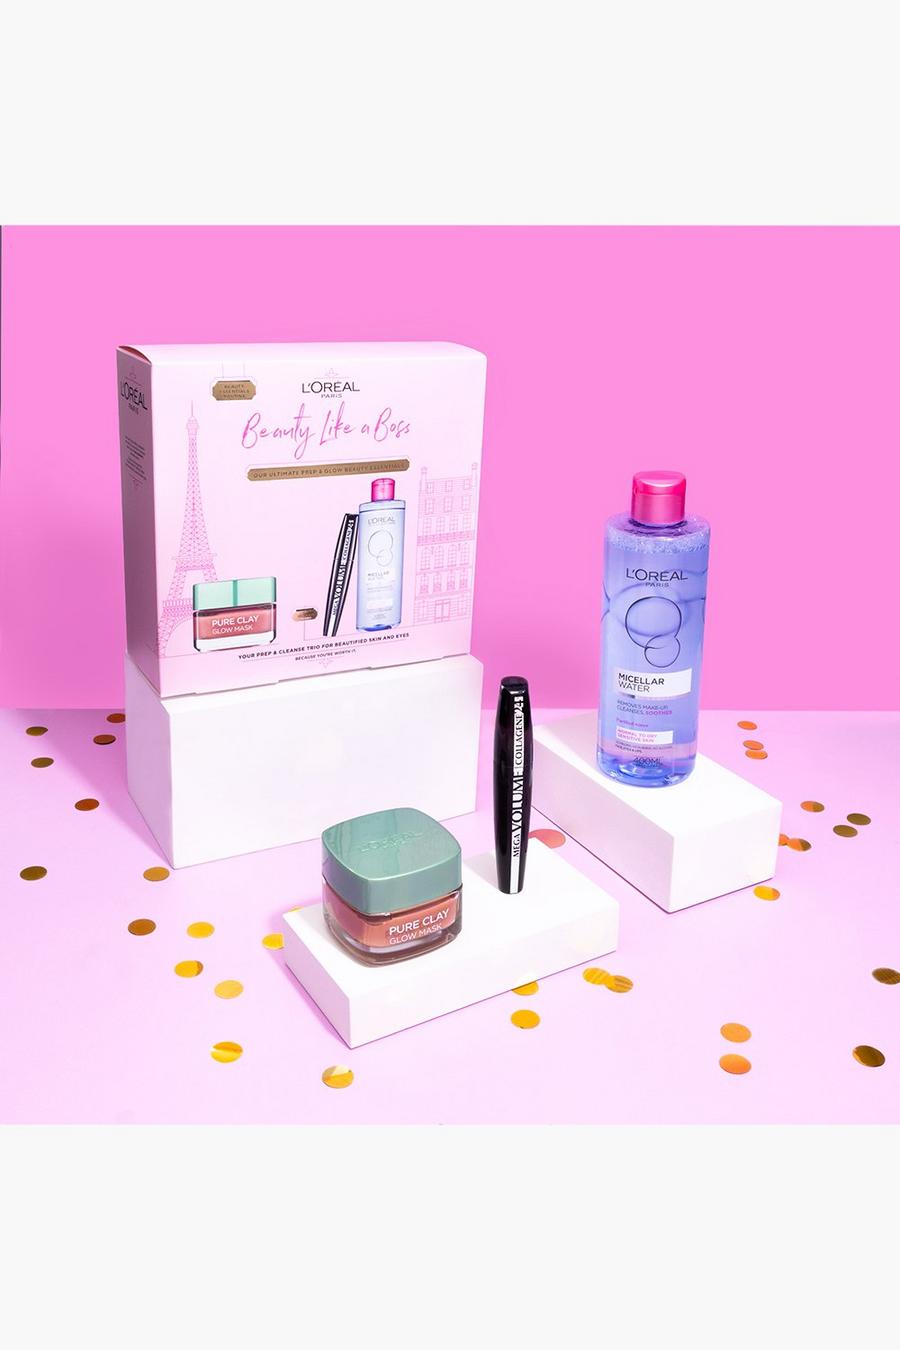 L'Oréal Paris - Coffret cadeau - Beaty Like A Boss, Pink